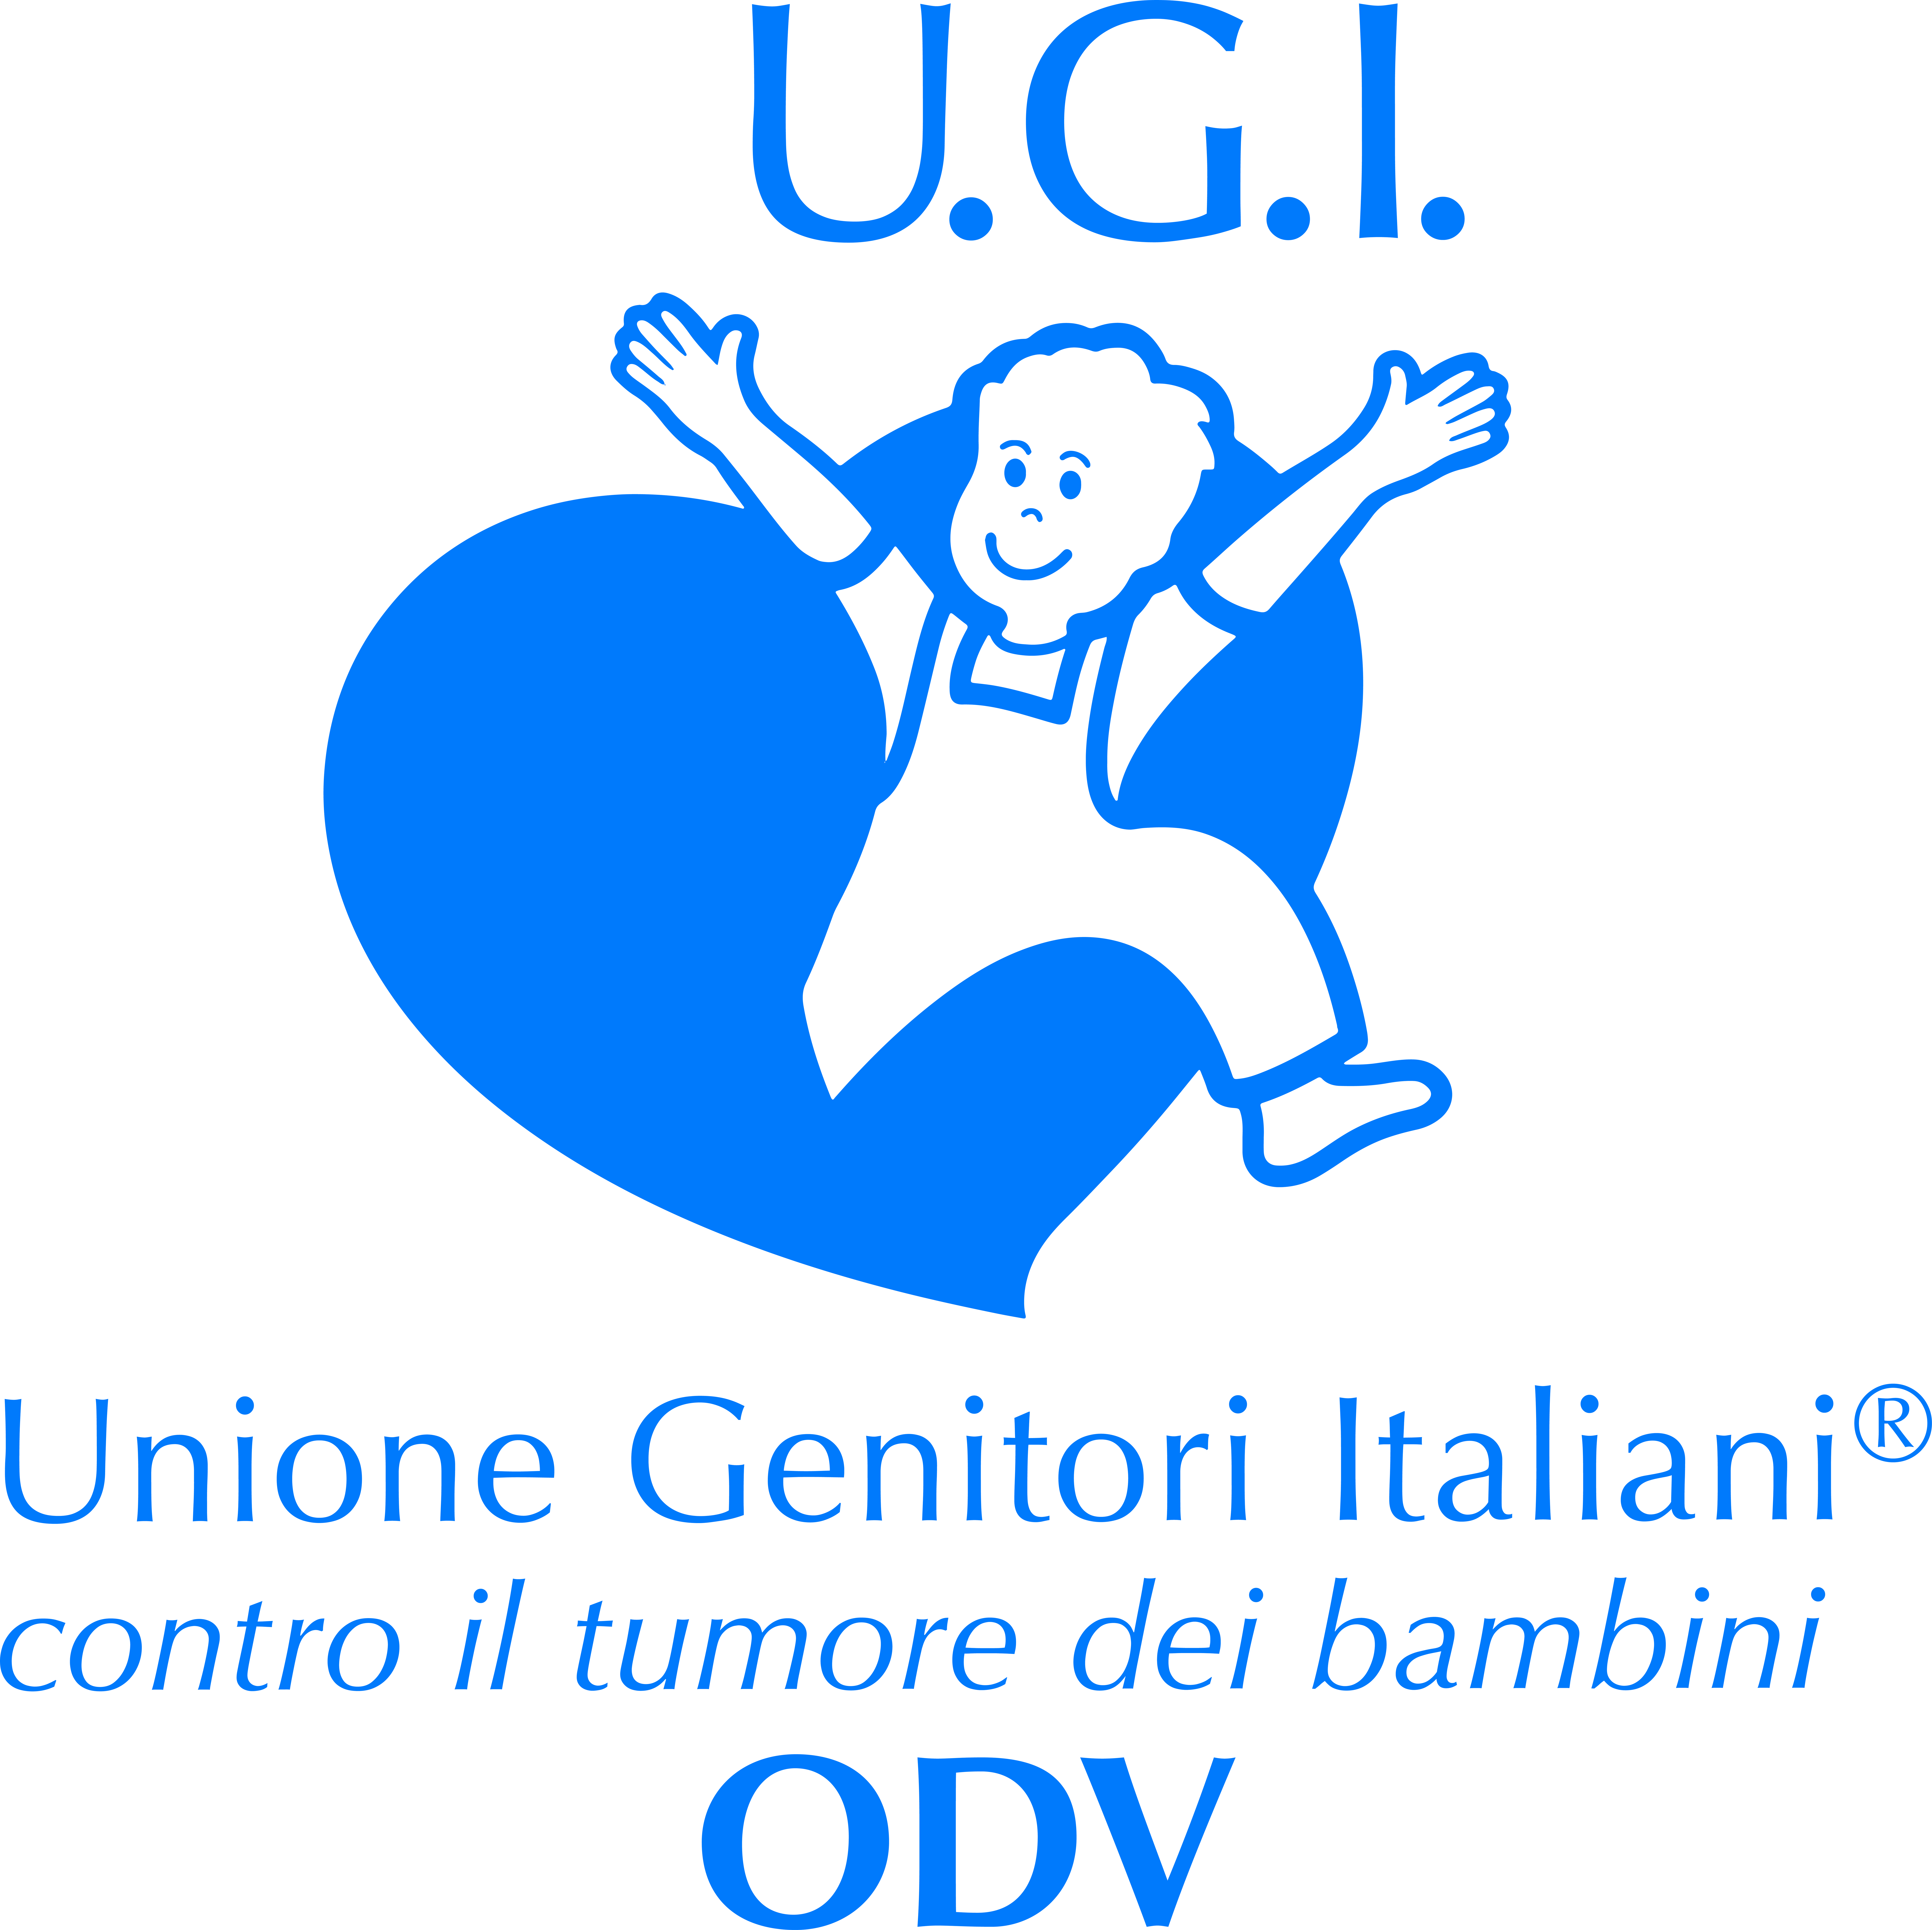 UGI - Unione Genitore Italiani contro il tumore dei bambini ODV